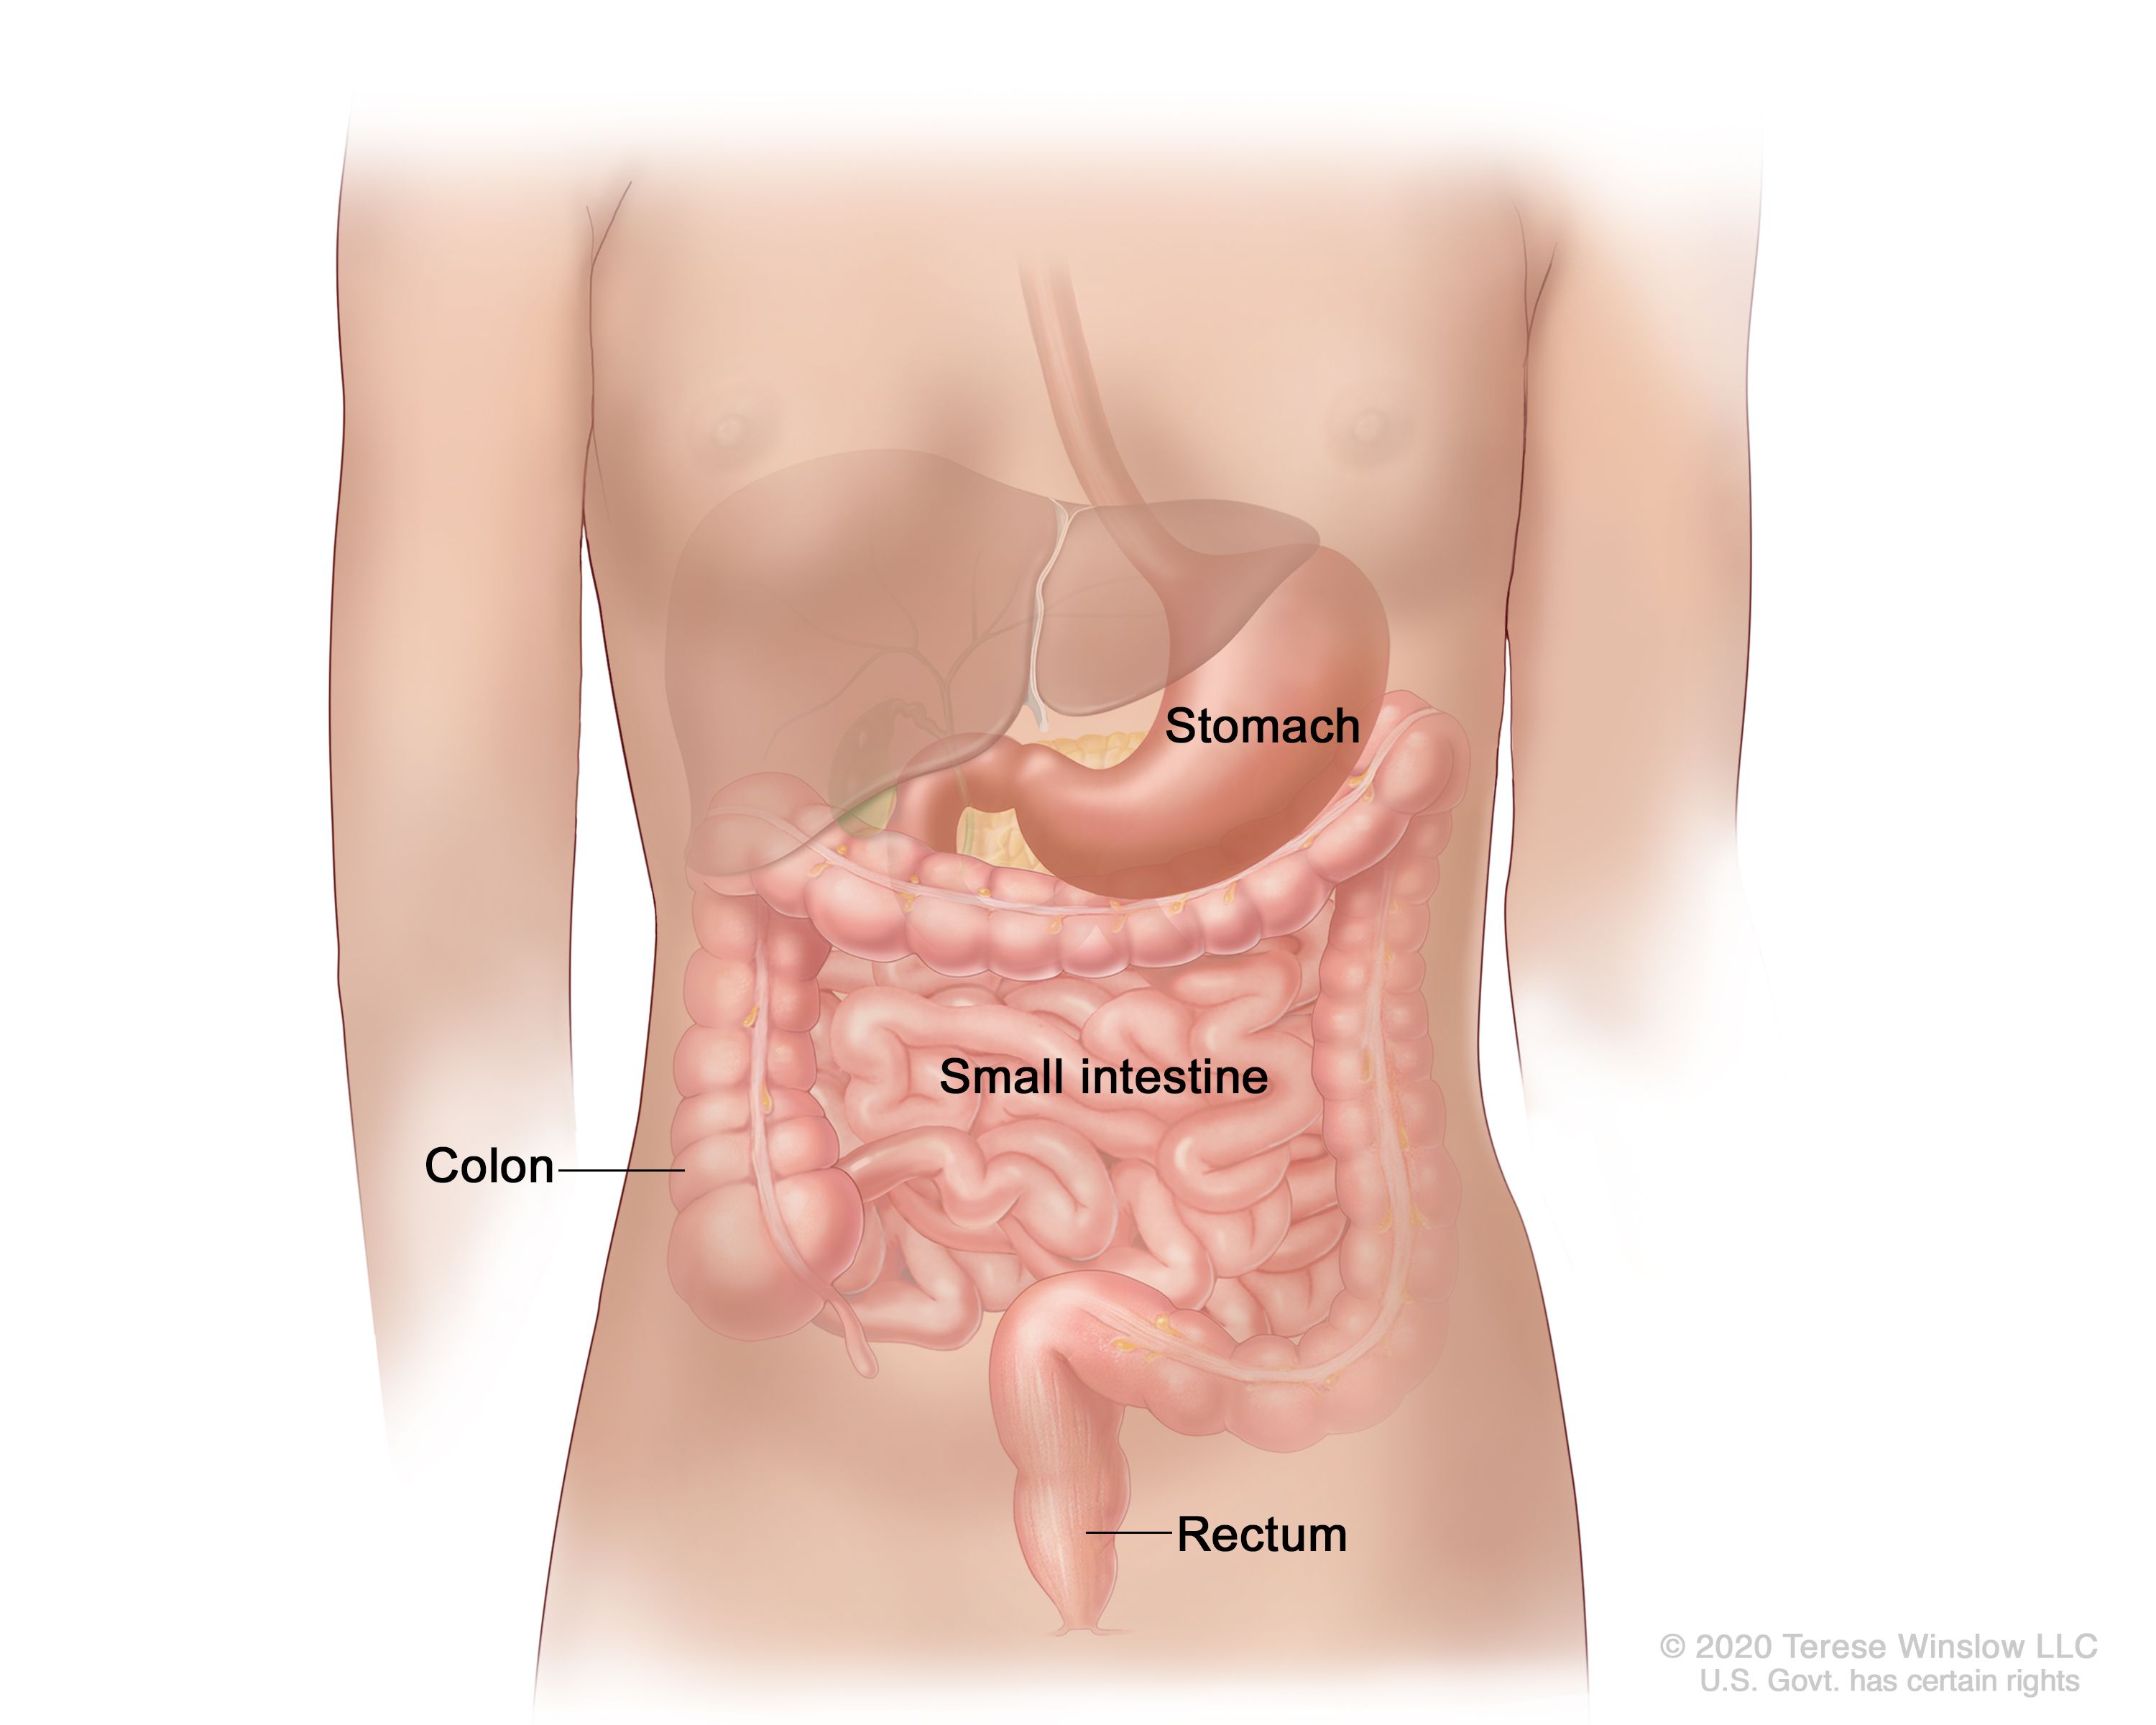 図には、胃、小腸、結腸、直腸などの消化管が示されている。